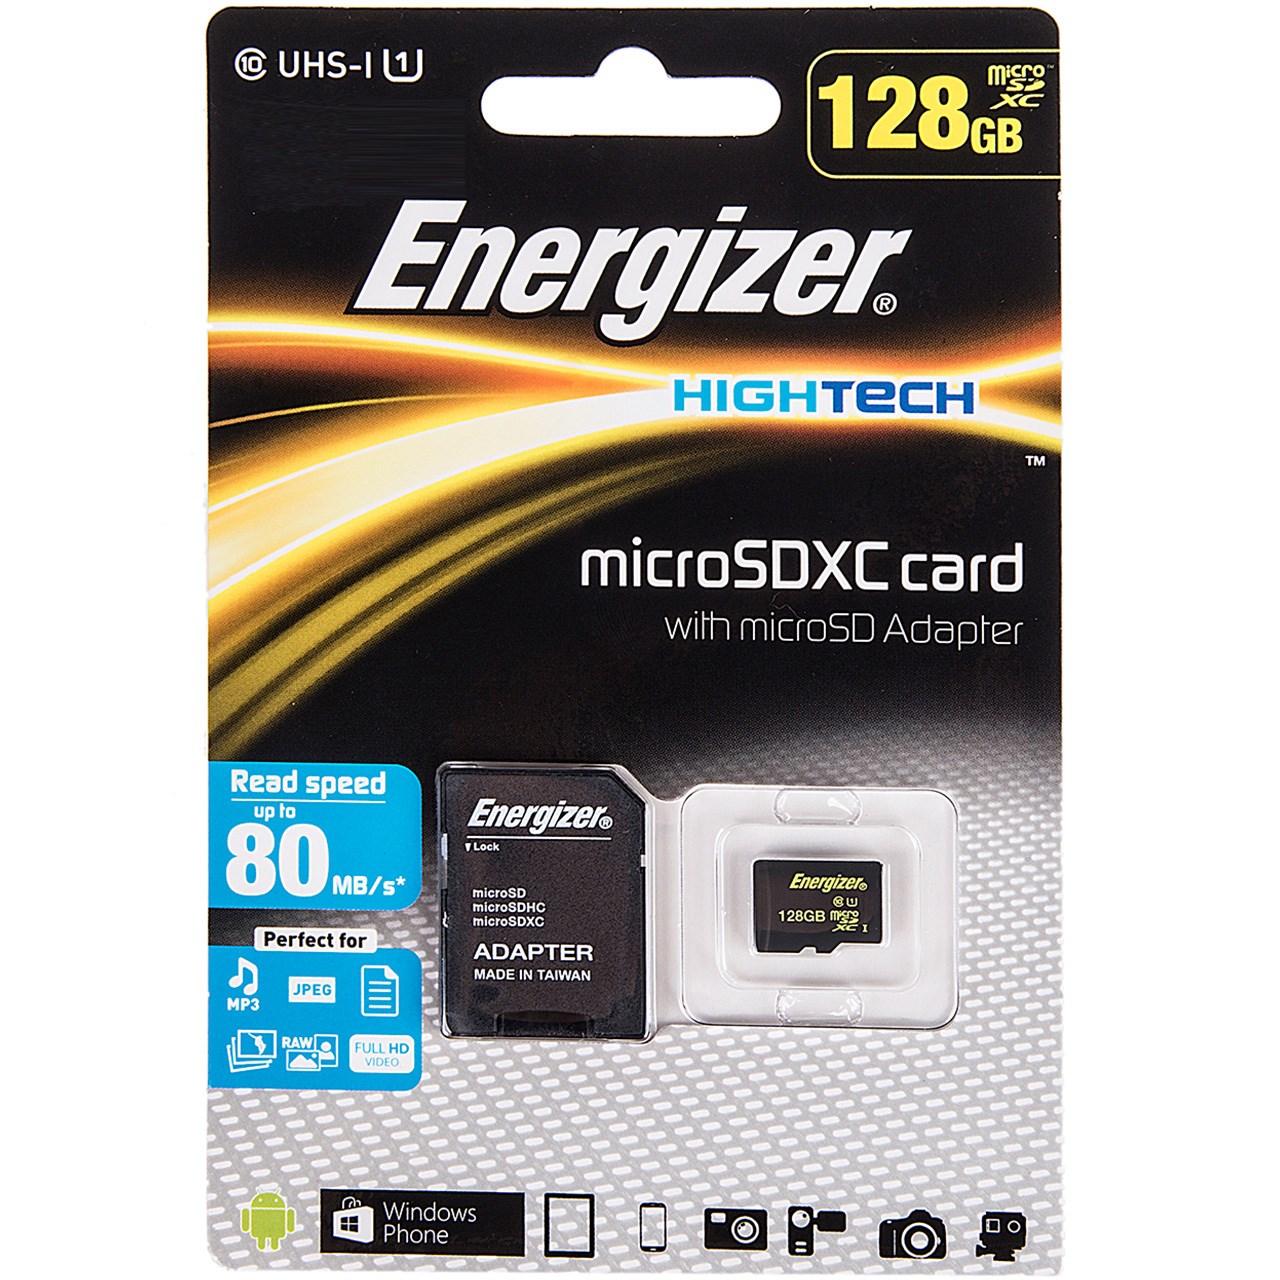 کارت حافظه microSDXC انرجایزر مدل Hightech کلاس 10 استاندارد UHS-I U1 سرعت 80MBps همراه با آداپتور SD ظرفیت 128 گیگابایت